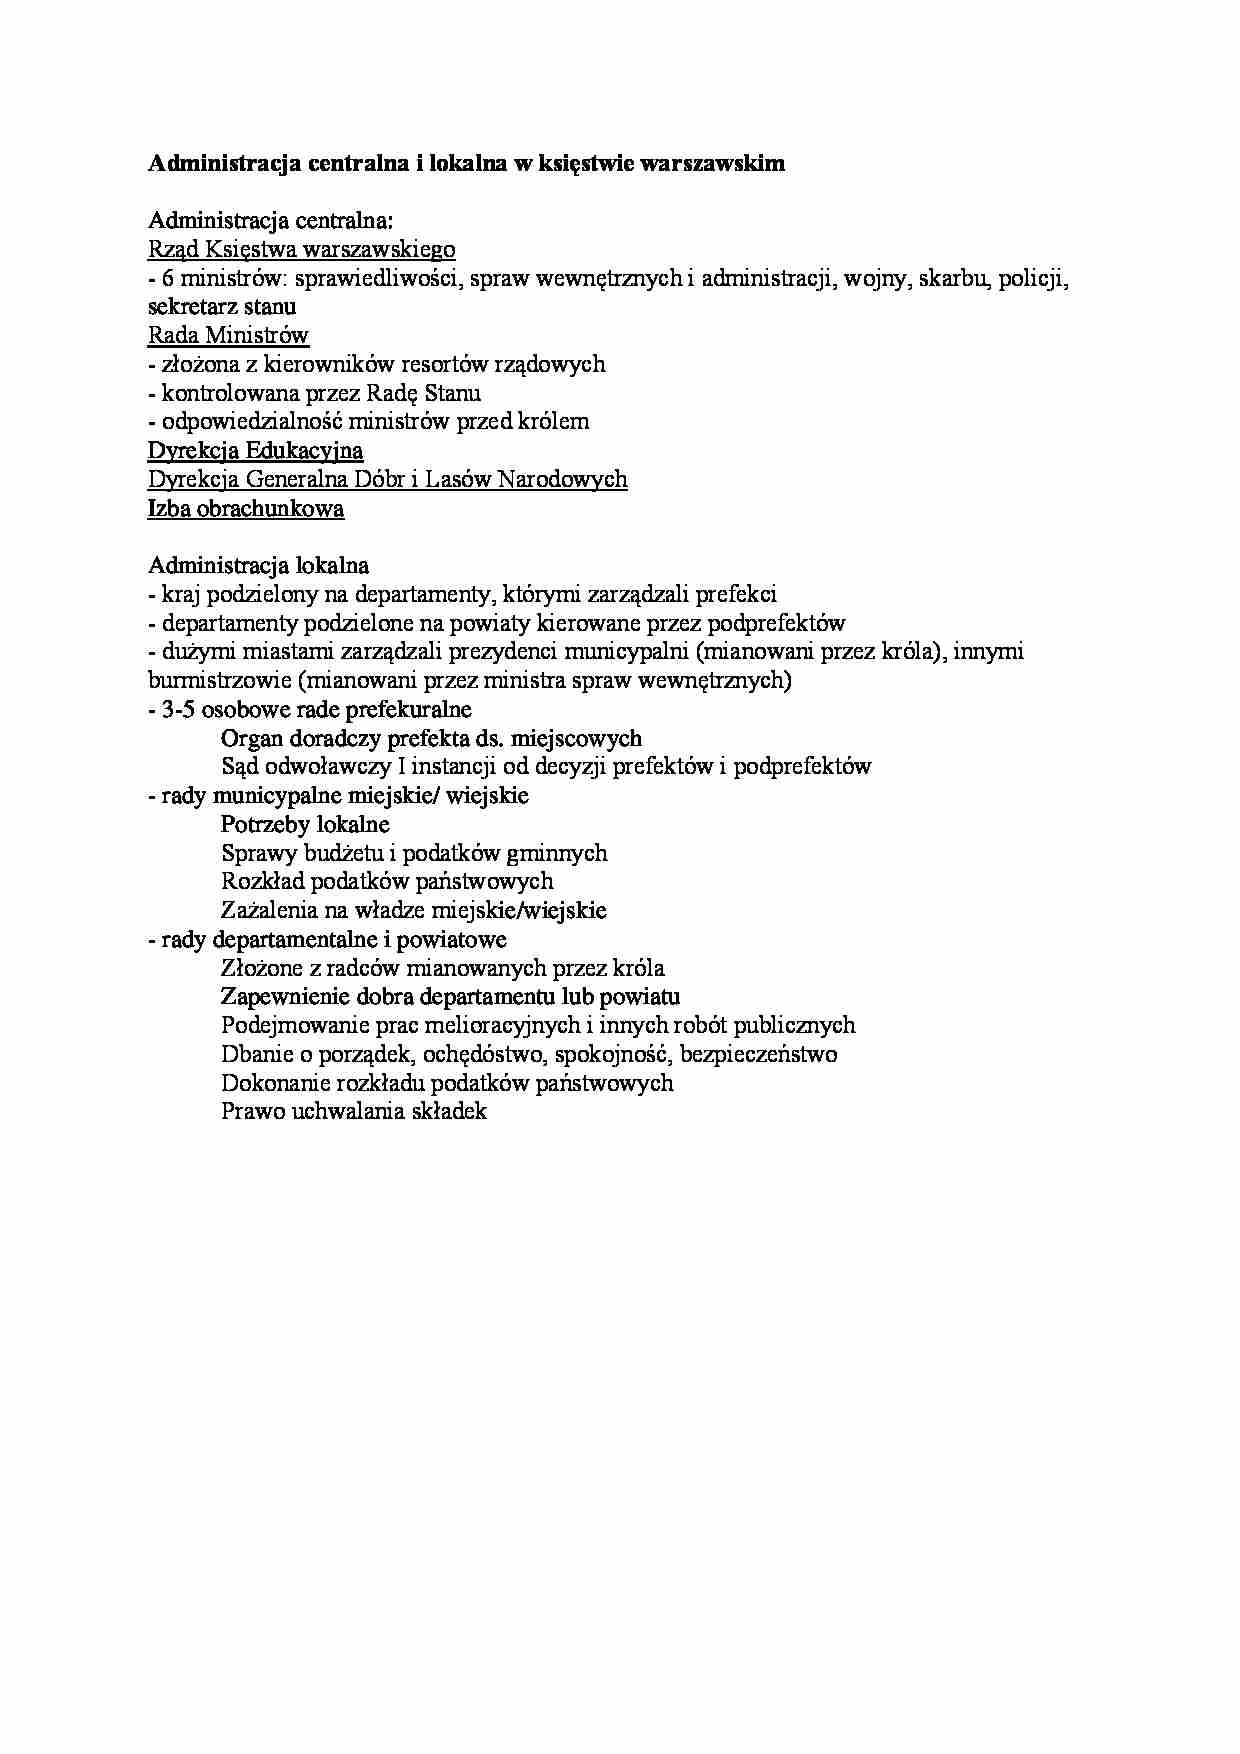 Administracja centralna i lokalna w księstwie warszawskim - omówienie - strona 1